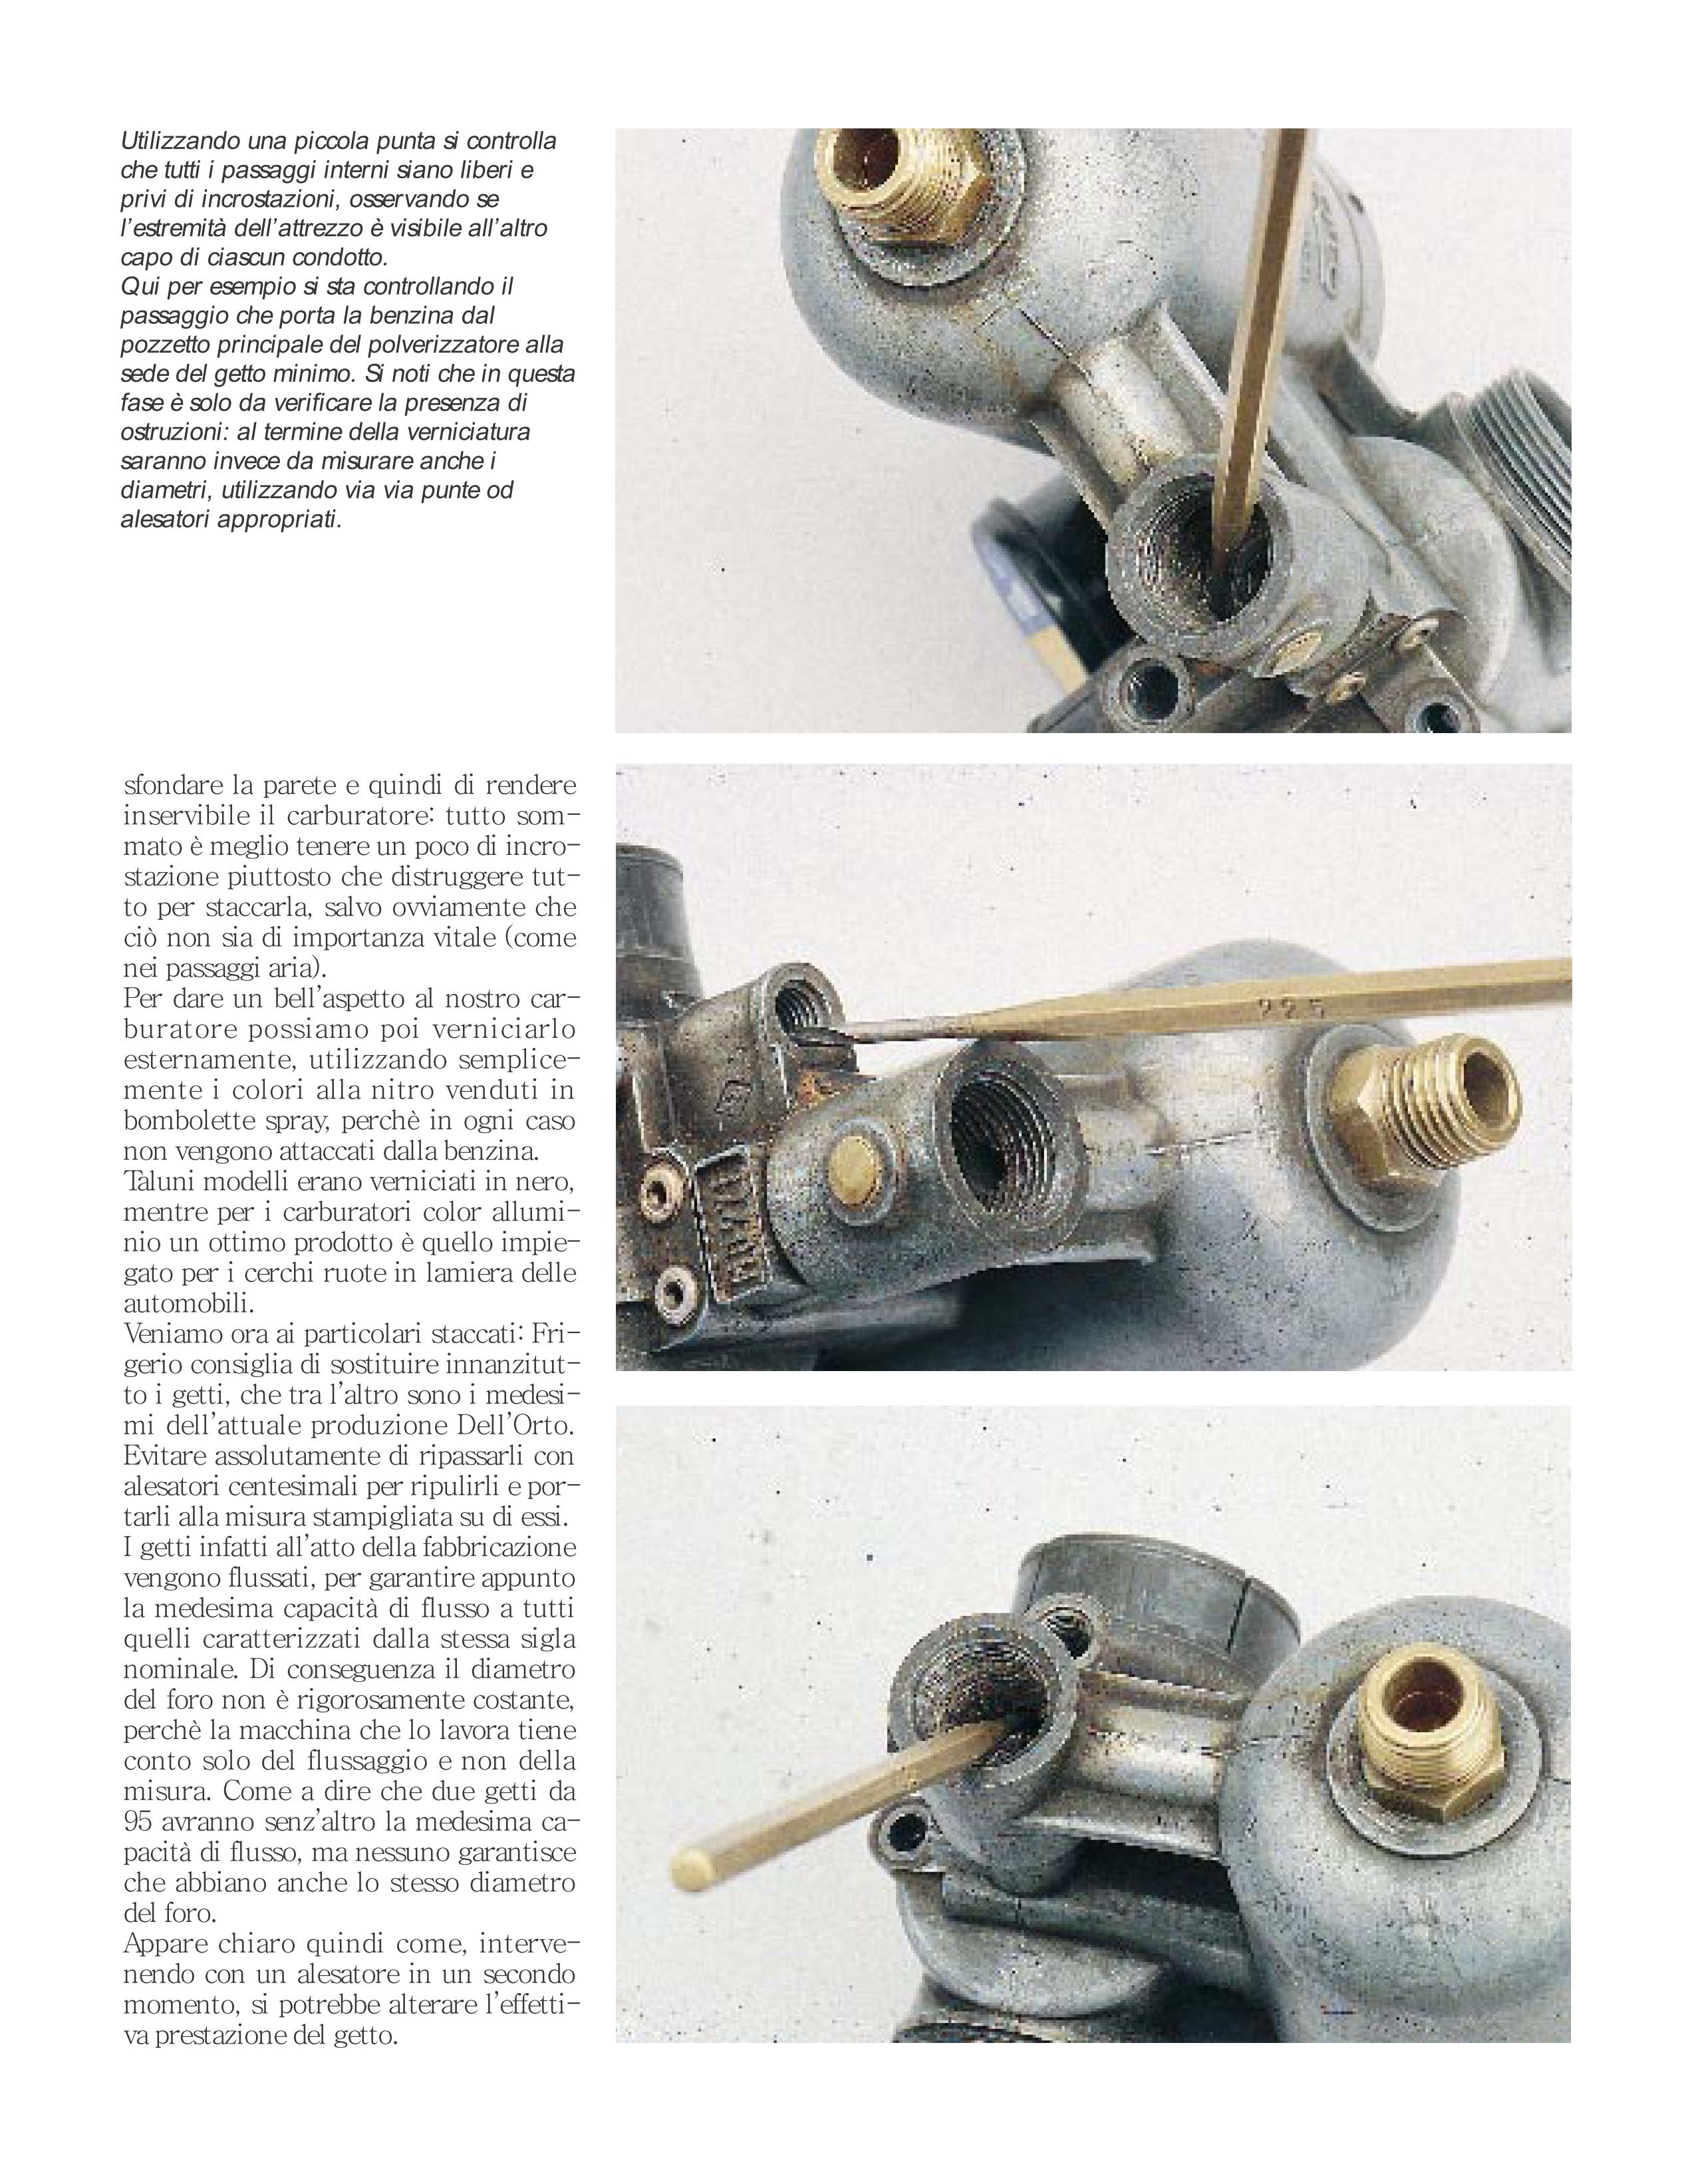 restauro carburatori Dellorto09.jpg